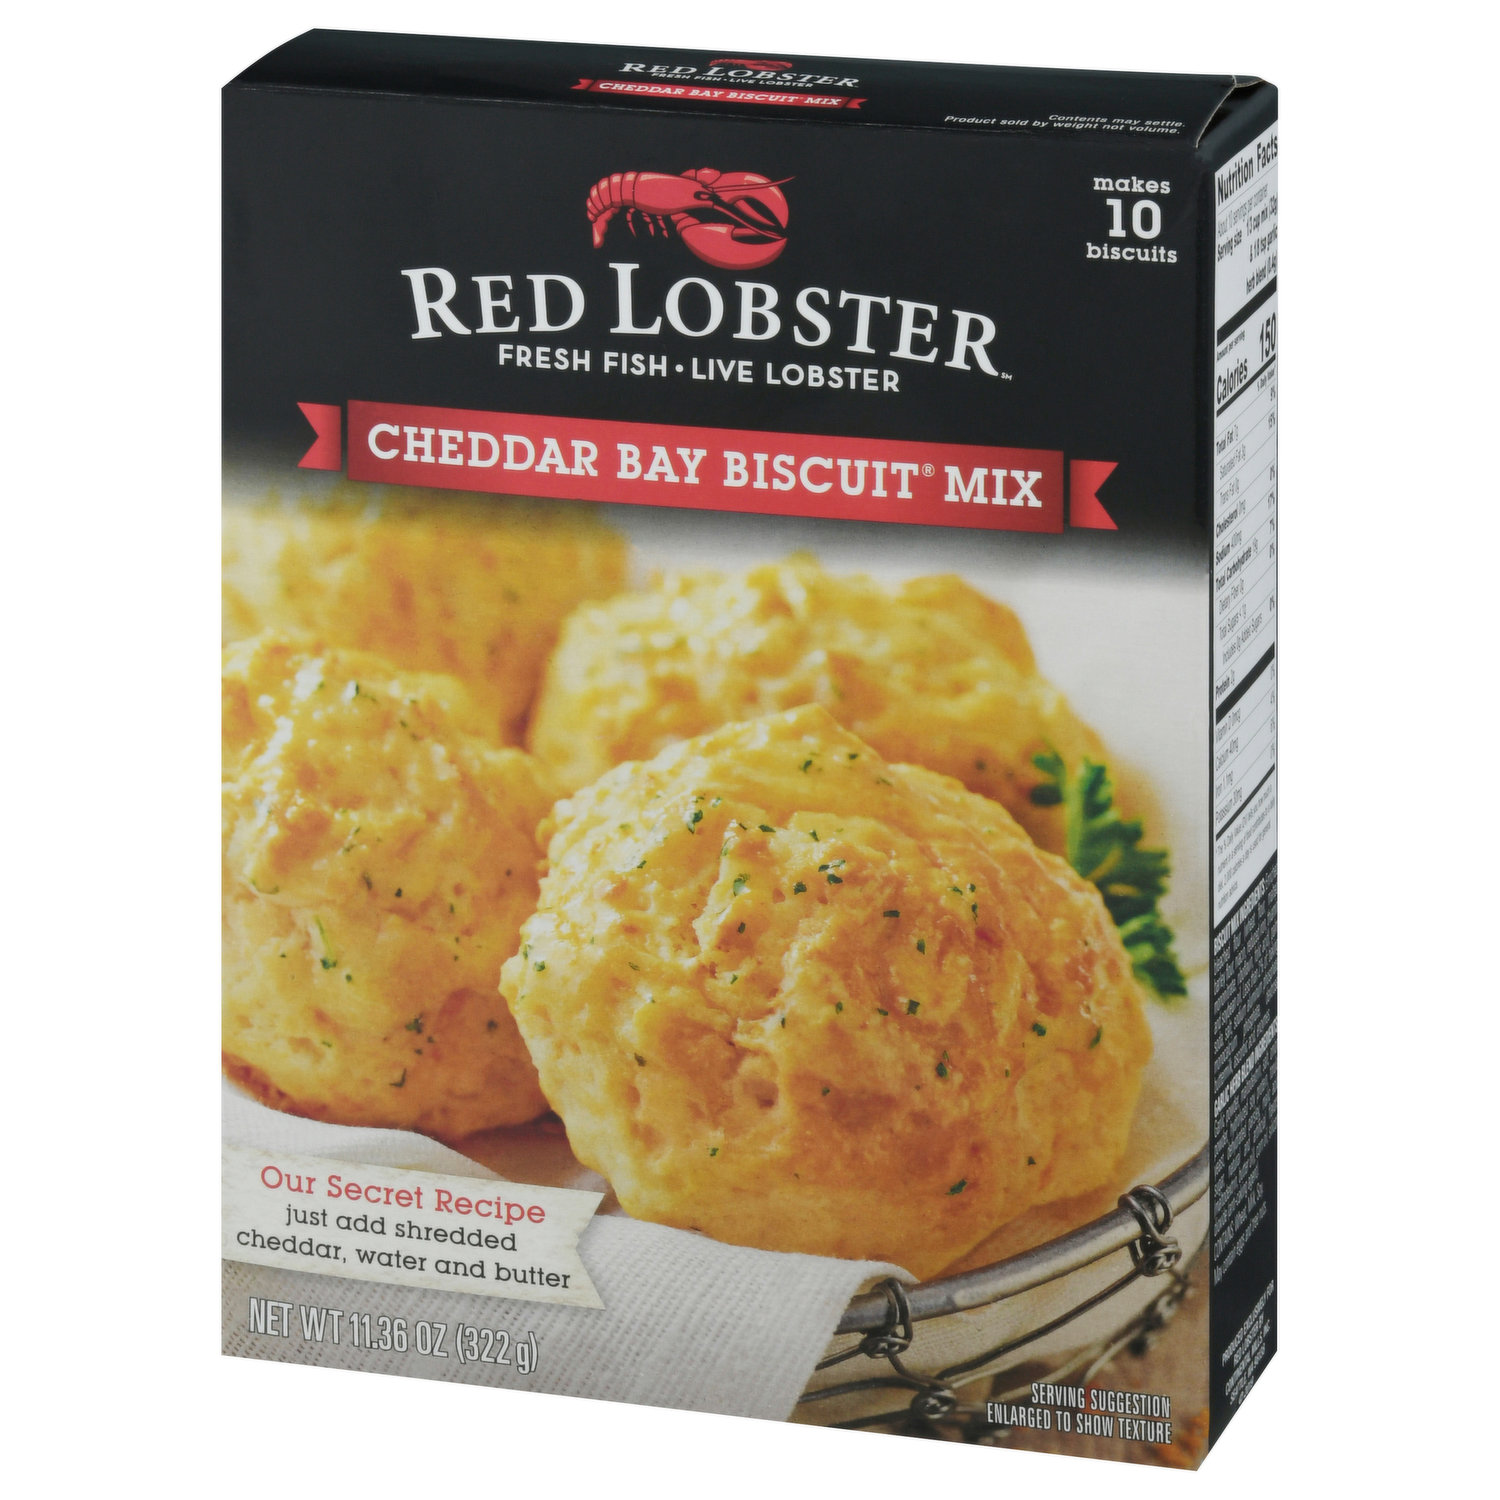 Red Lobster Red Lobster Cheddar Bay Biscuit Mix, 11.36 Oz